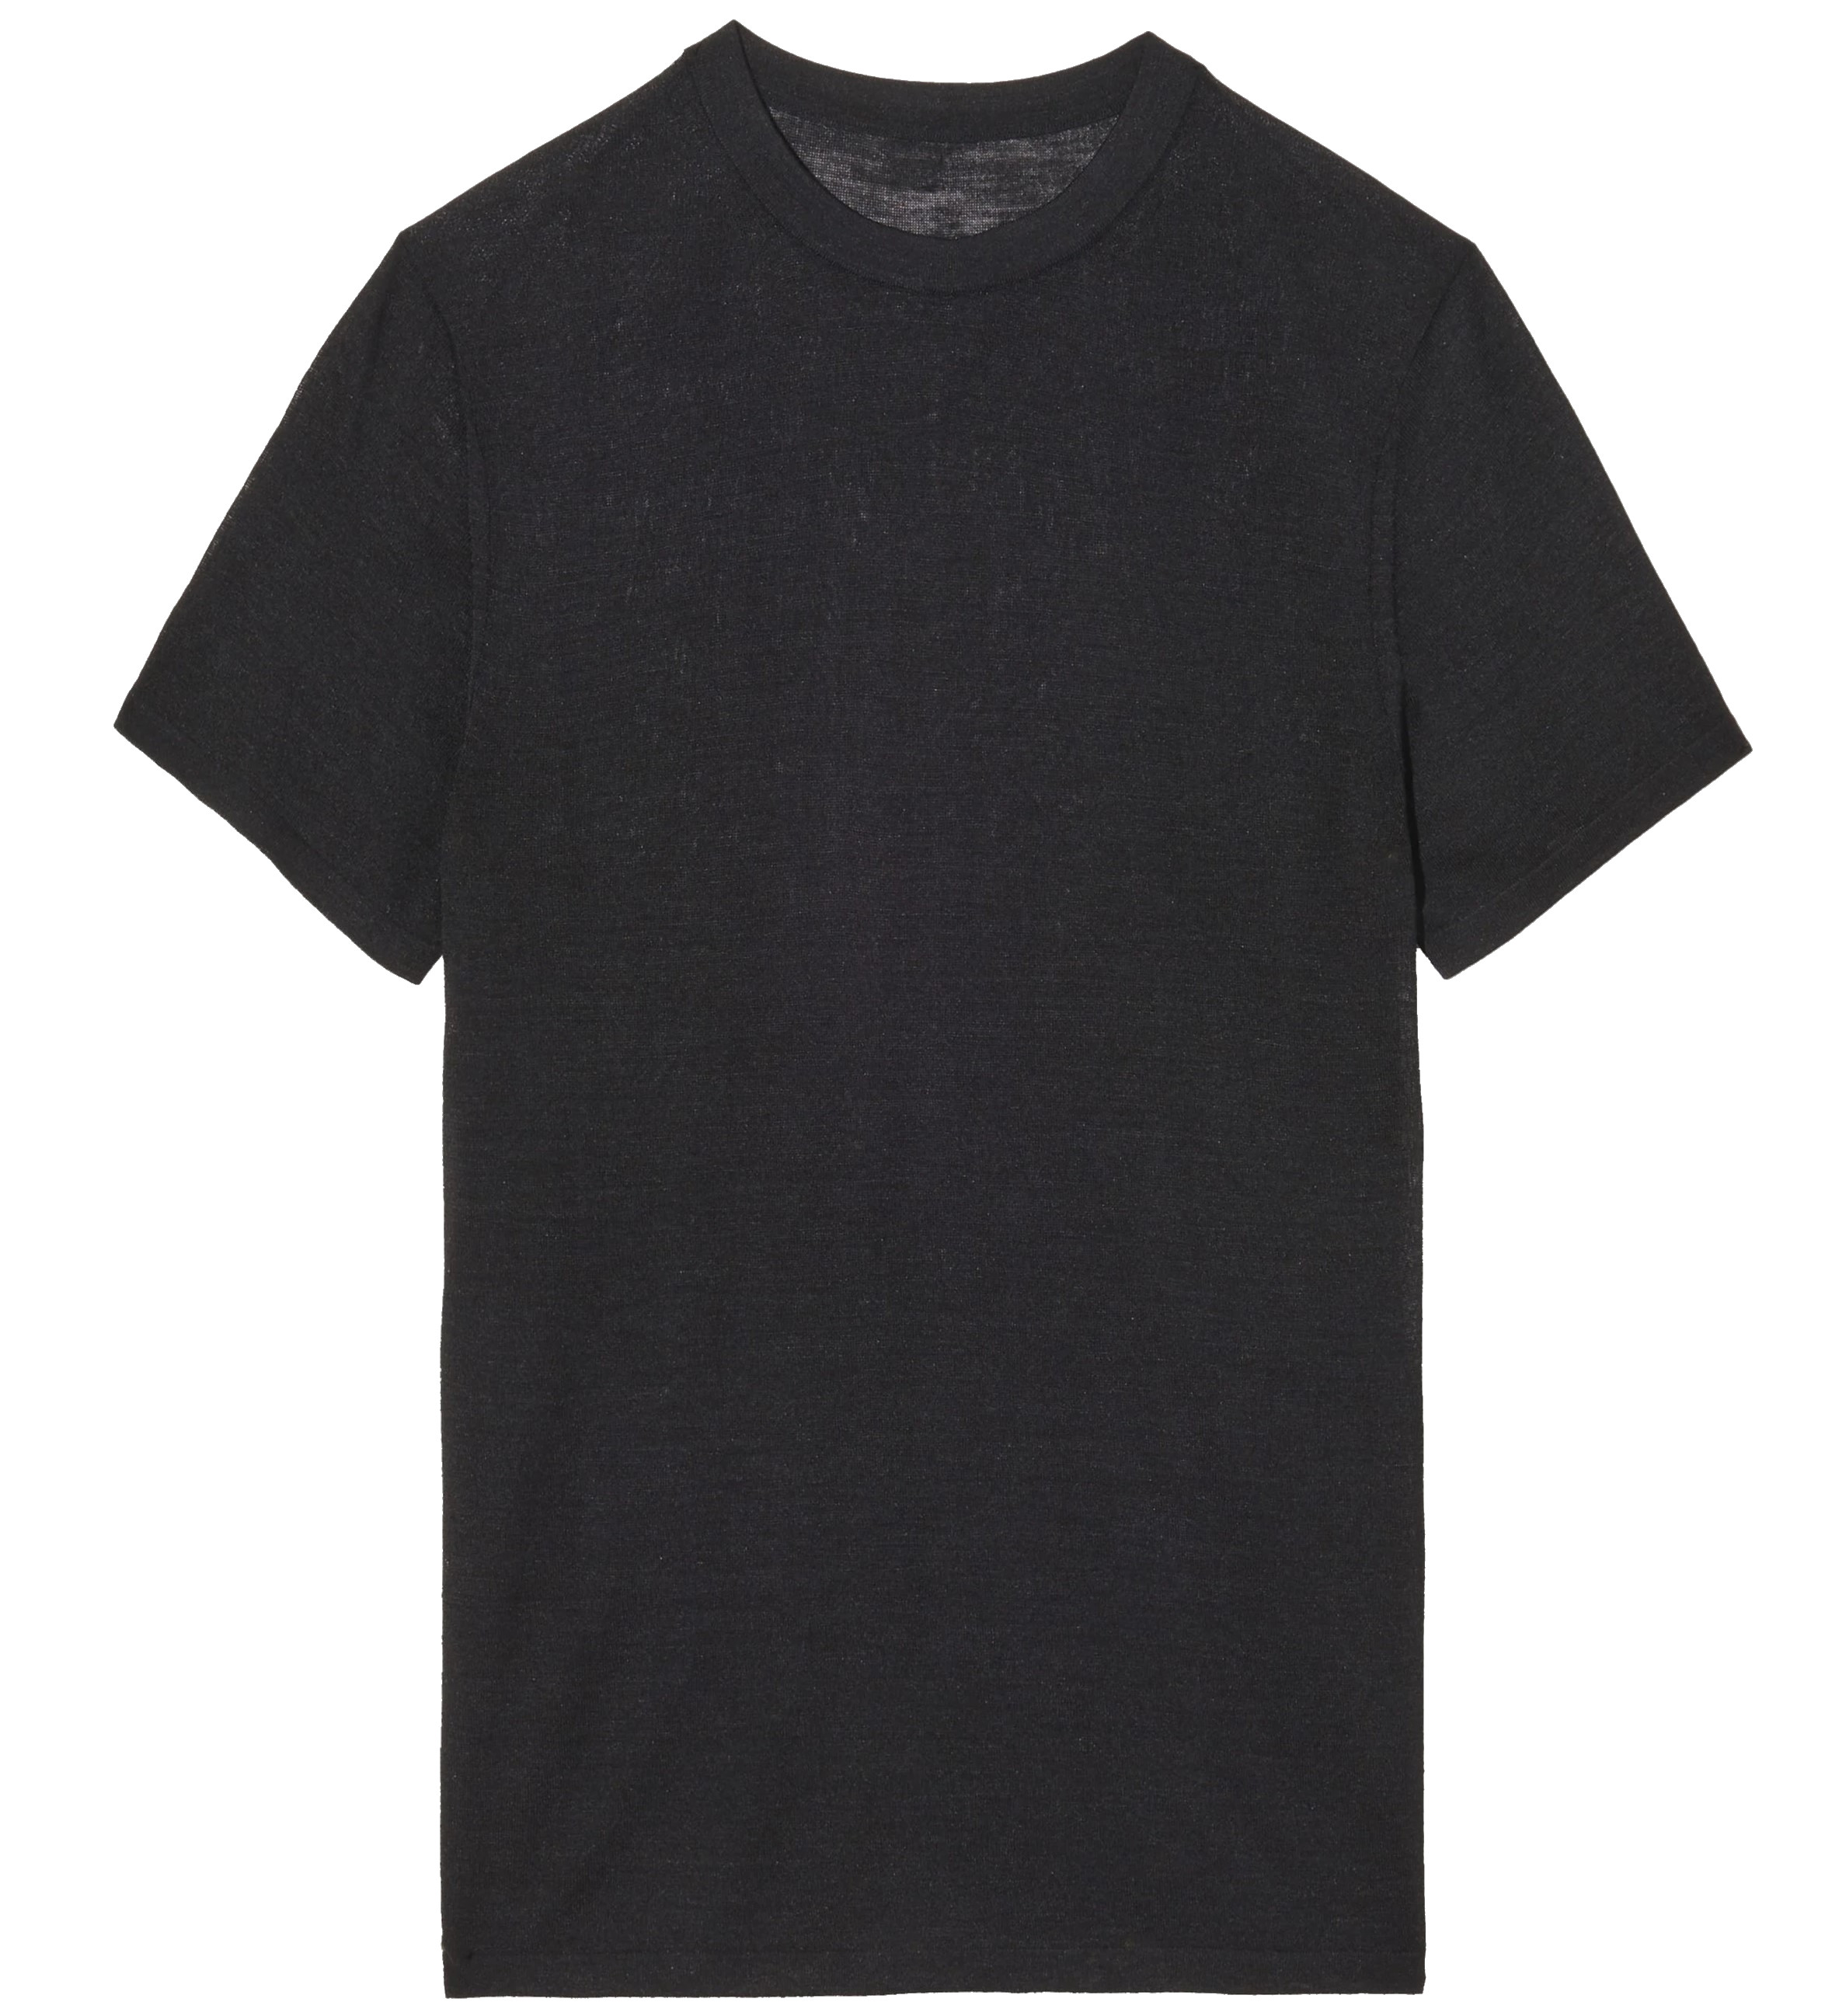 NILI LOTAN Kimena Silk T-Shirt in Black L